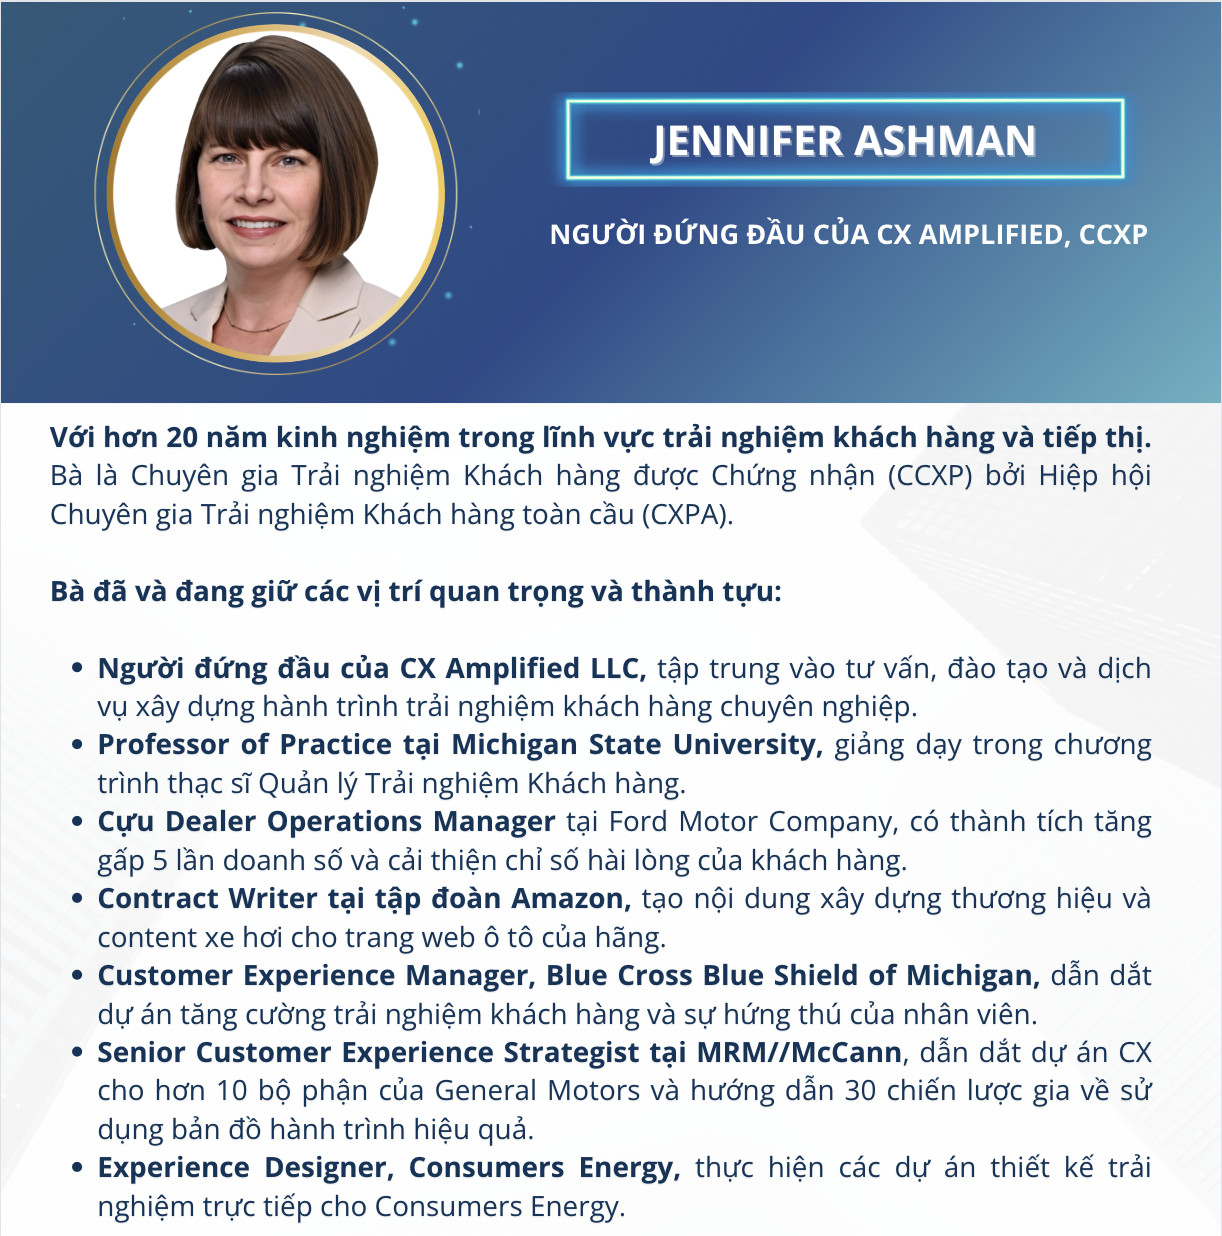 Jennifer Ashman – Người đứng đầu của CX Amplified, CCXP (Giảng viên khóa học CXM - Quản trị trải nghiệm khách hàng MSU & FPT)